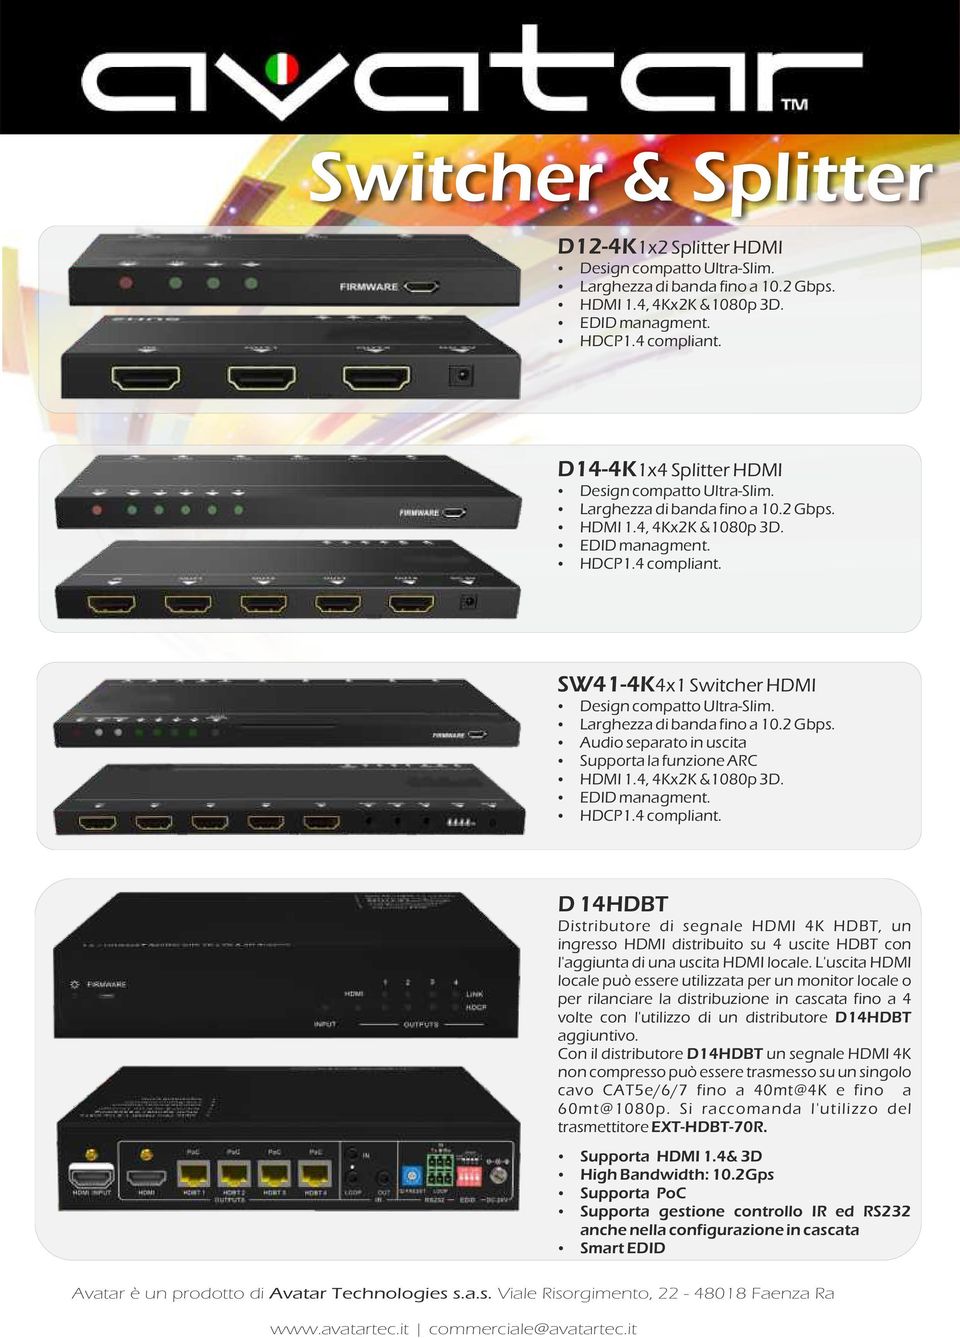 SW41-4K4x1 Switcher HDMI Design compatto Ultra-Slim. Larghezza di banda fino a 10.2 Gbps. Audio separato in uscita Supporta la funzione ARC HDMI 1.4, 4Kx2K &1080p 3D. EDID managment. HDCP1.